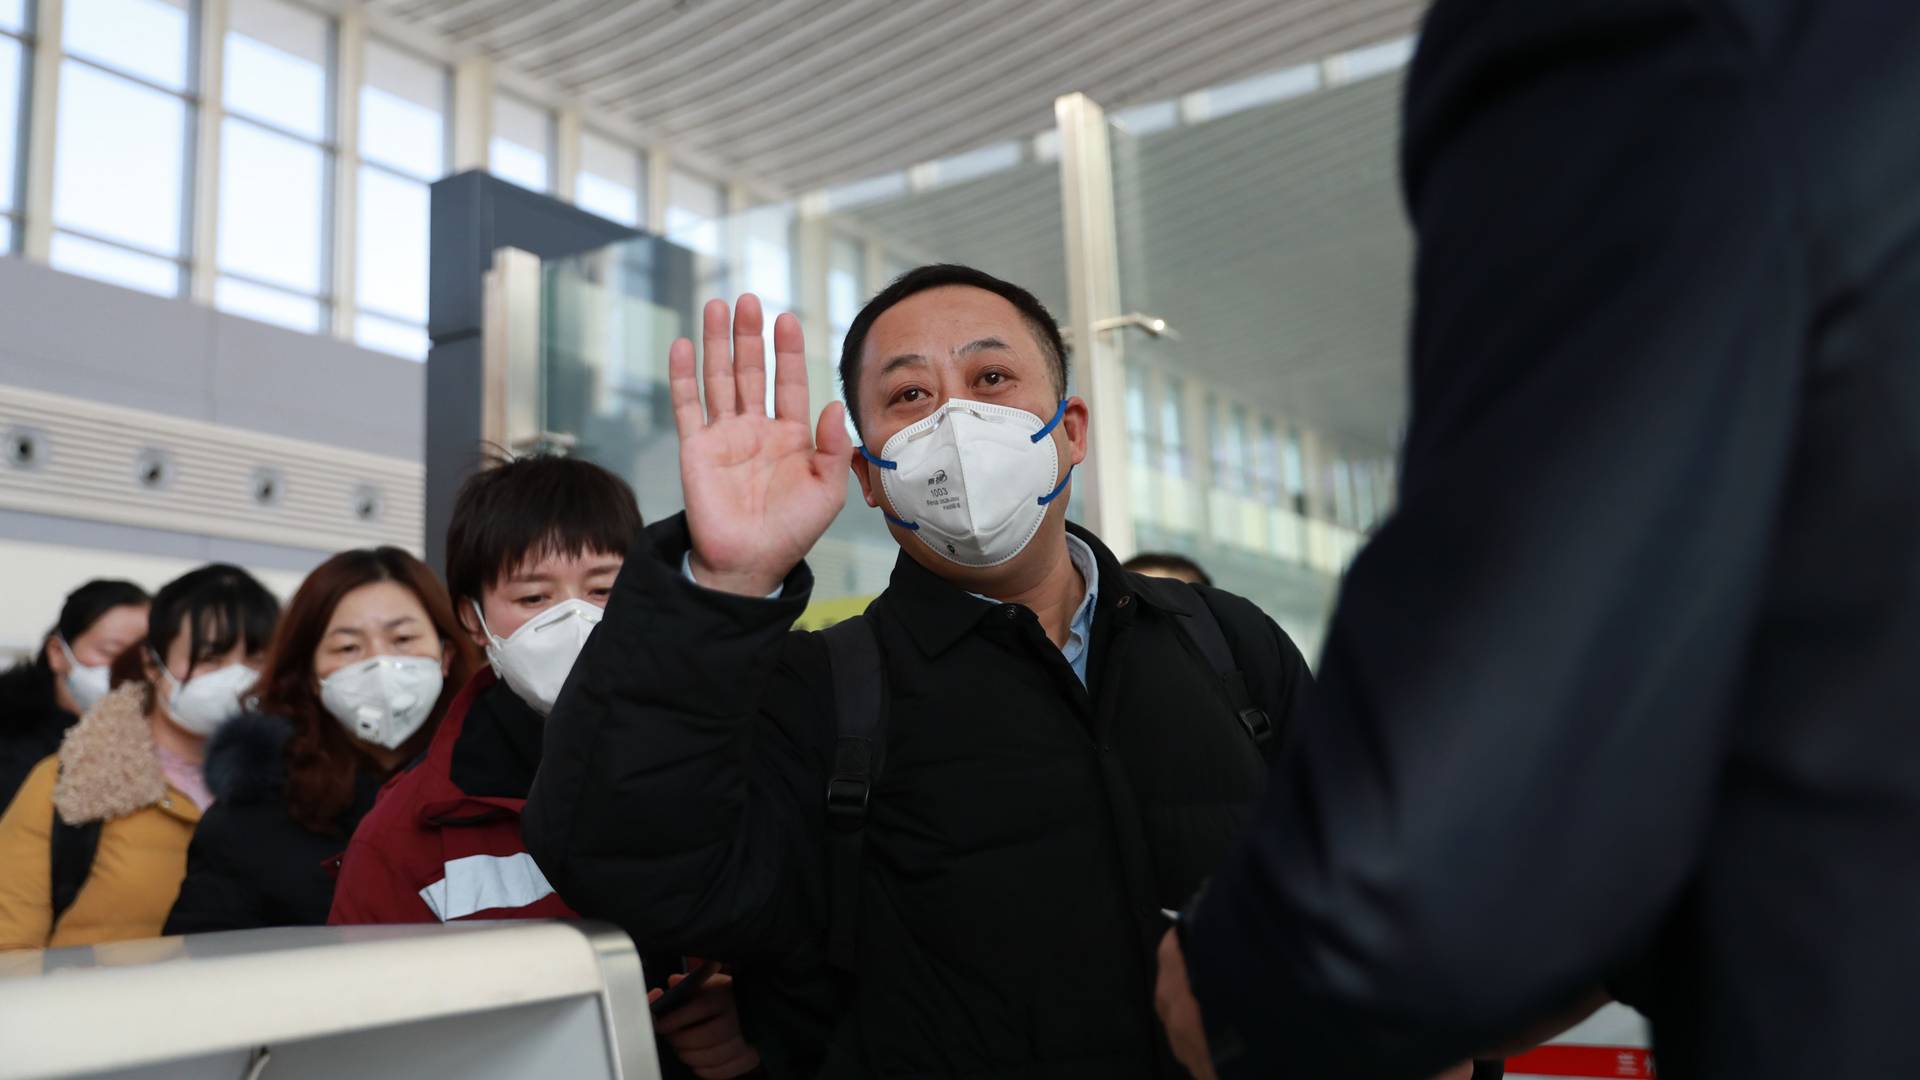 Koronavírus: a budapesti repülőtéren is elkezdték vizsgálni a Kínából érkező utasokat